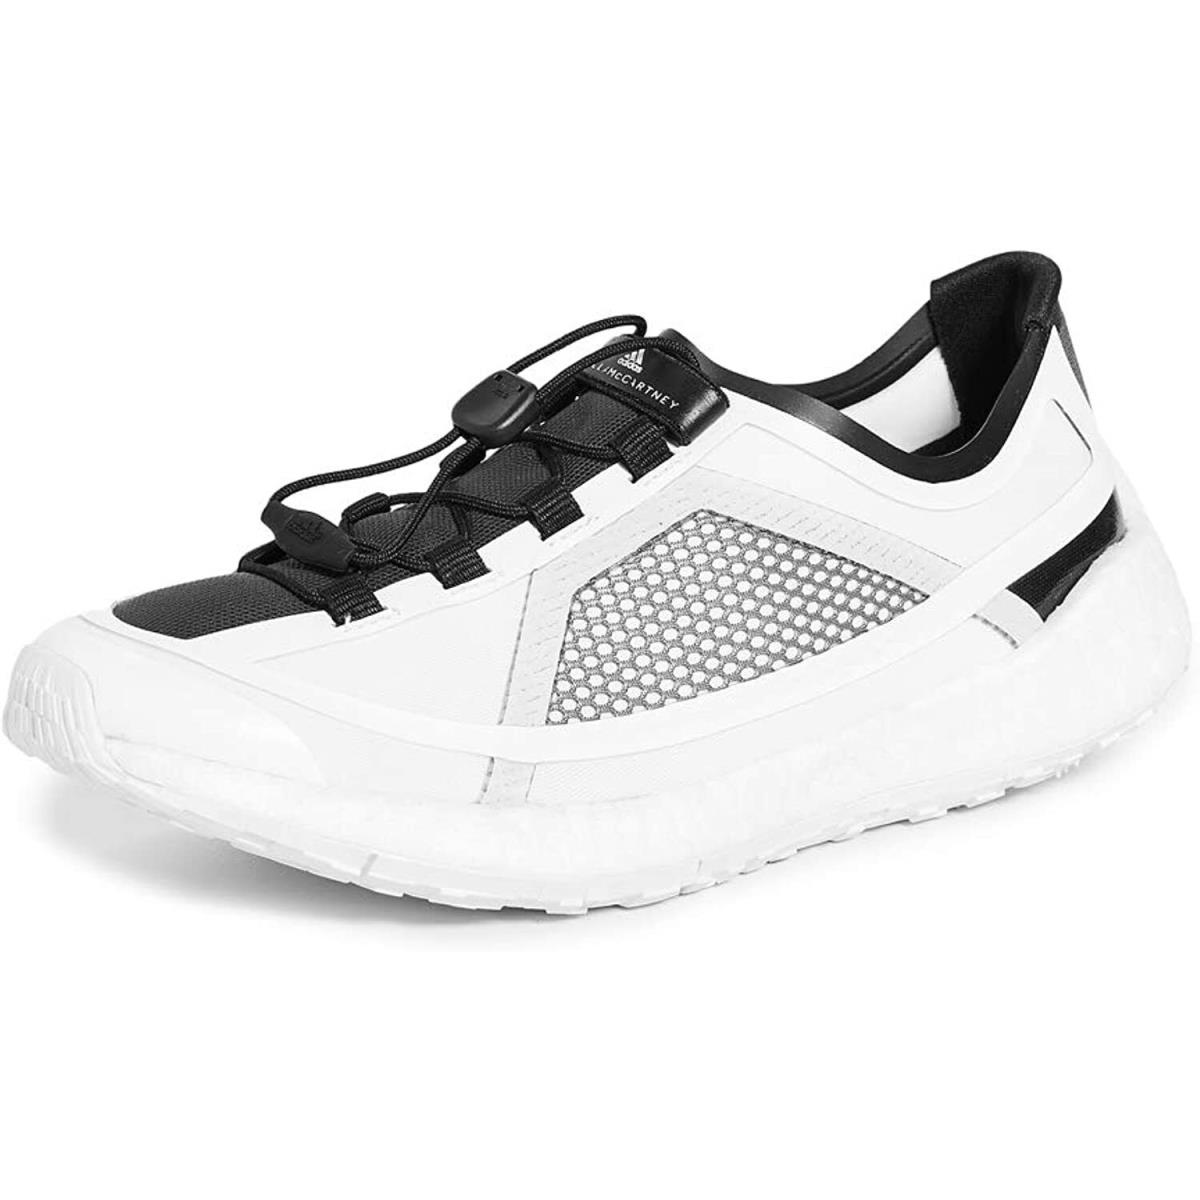 Adidas by Stella Mccartney Pulseboost Women`s Shoe G28329 Size 9 US